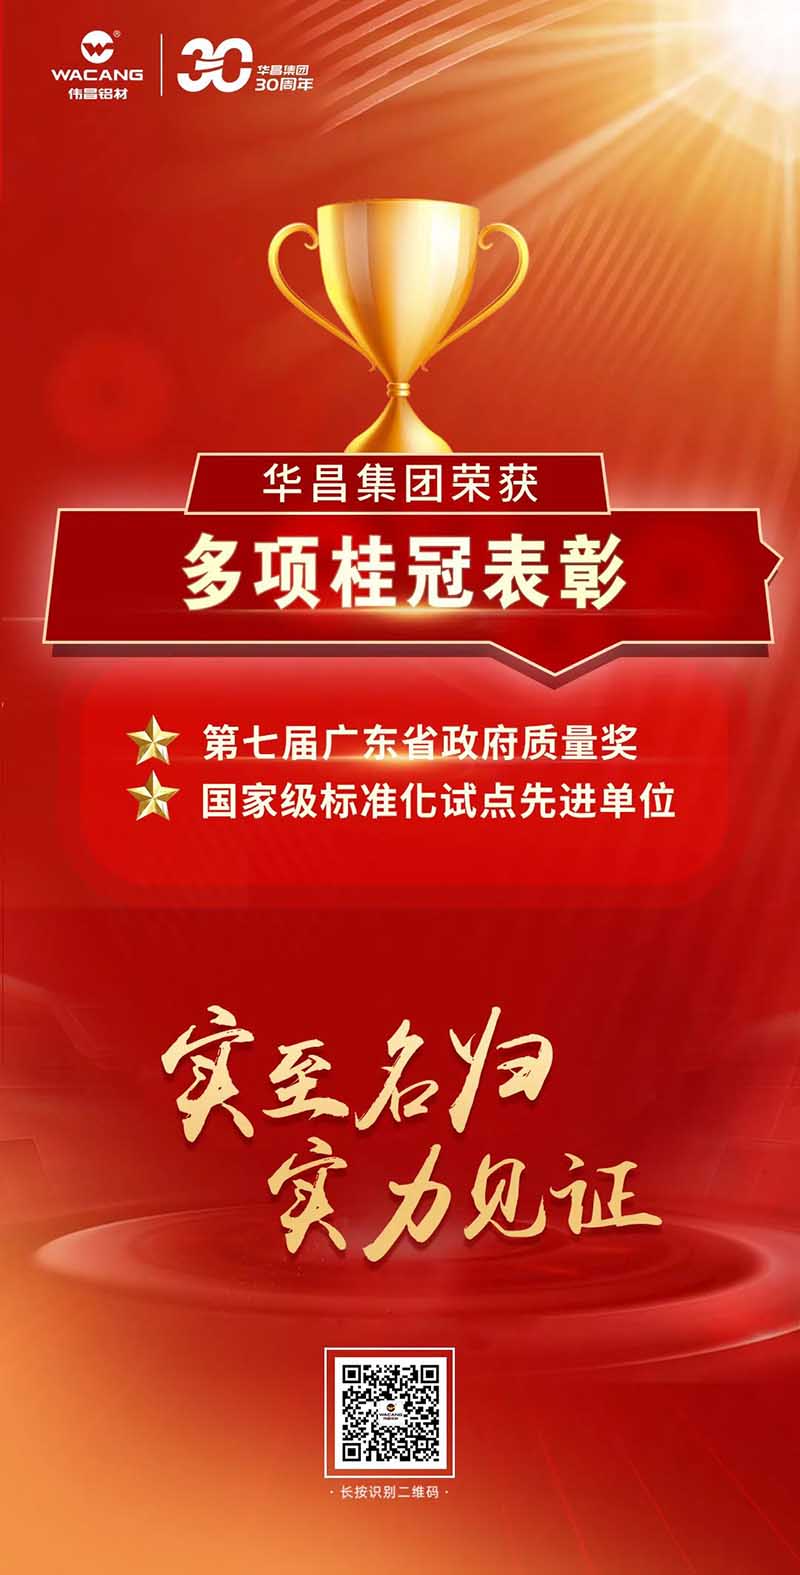 熱烈祝賀廣東華昌集團有限公司榮獲多項桂冠表彰!